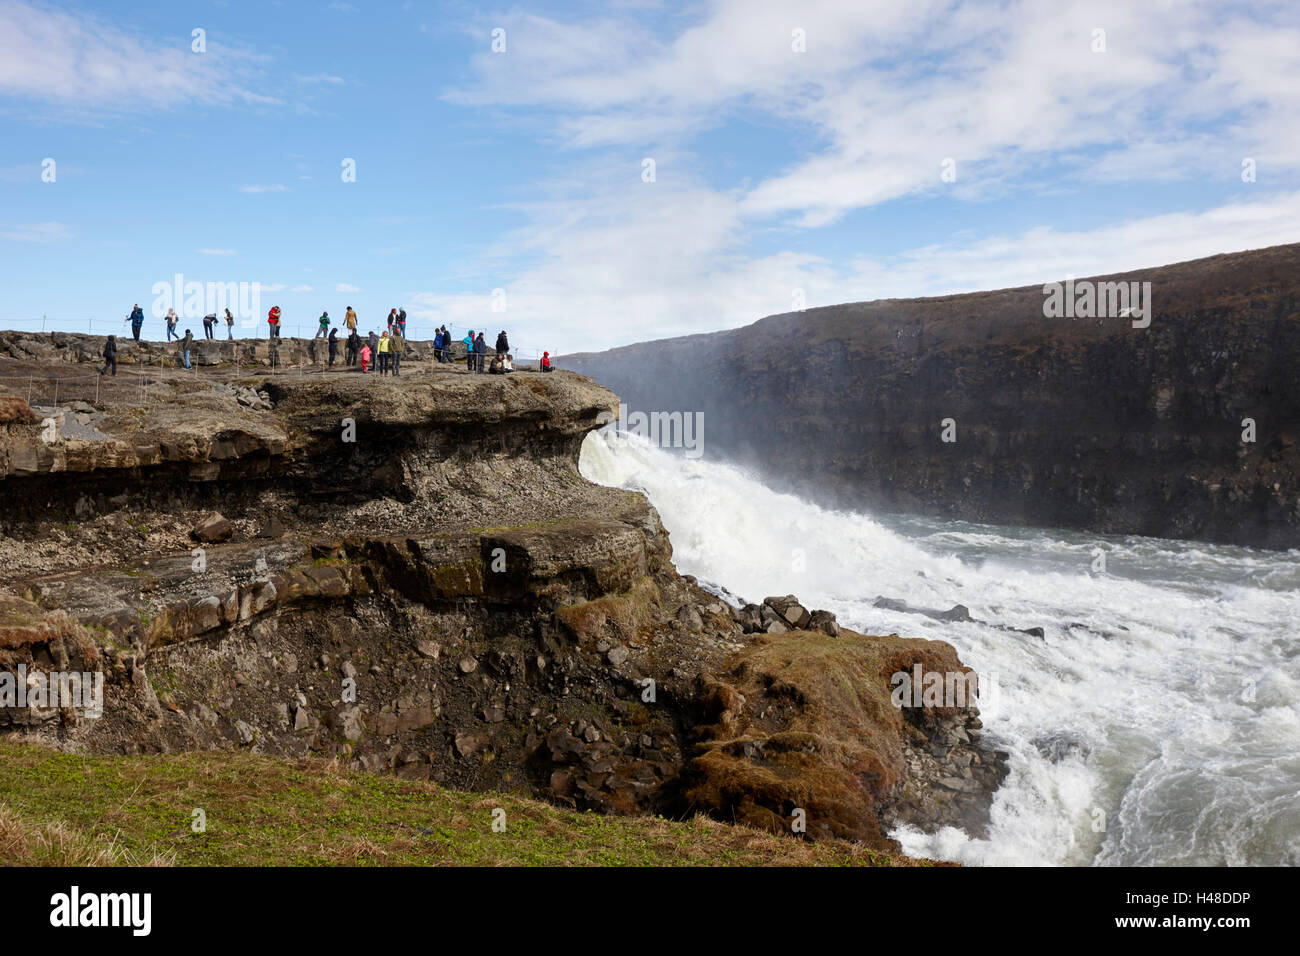 Turistas en la plataforma de roca con vistas a la cascada de Gullfoss en el círculo de oro de Islandia Foto de stock